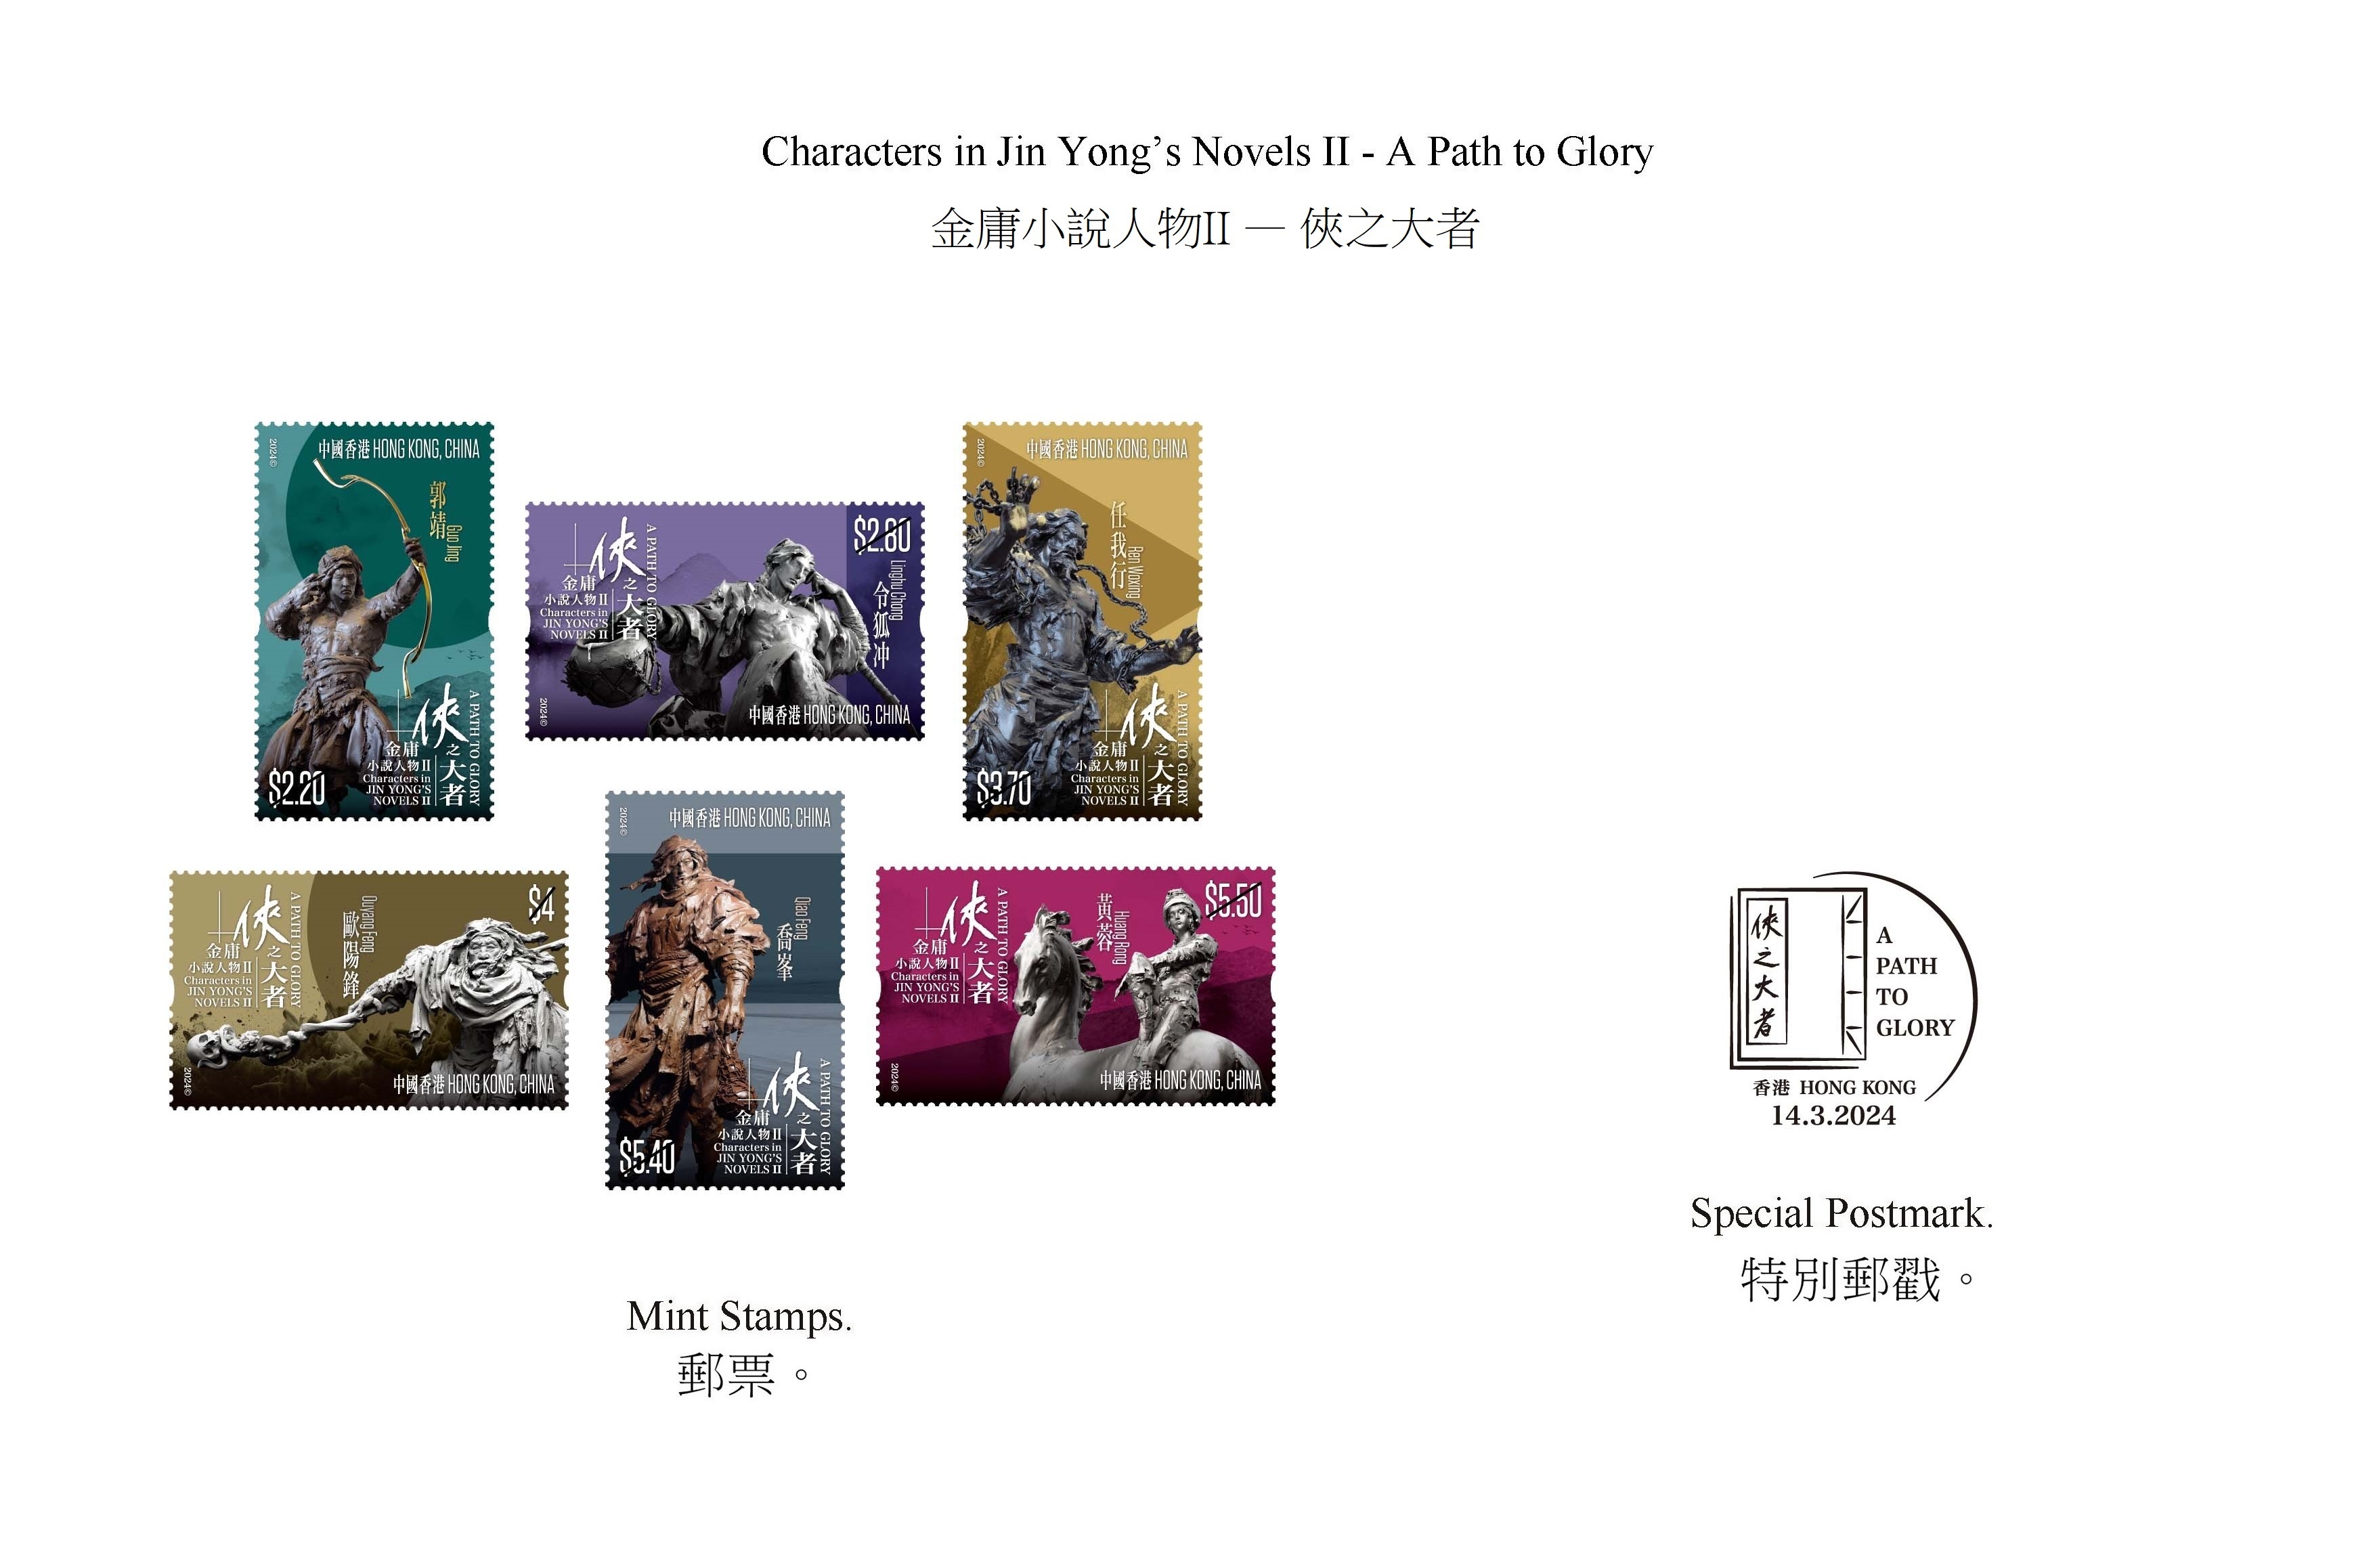 香港邮政将要发售的“金庸小说人物II——侠之大者”的特别邮票